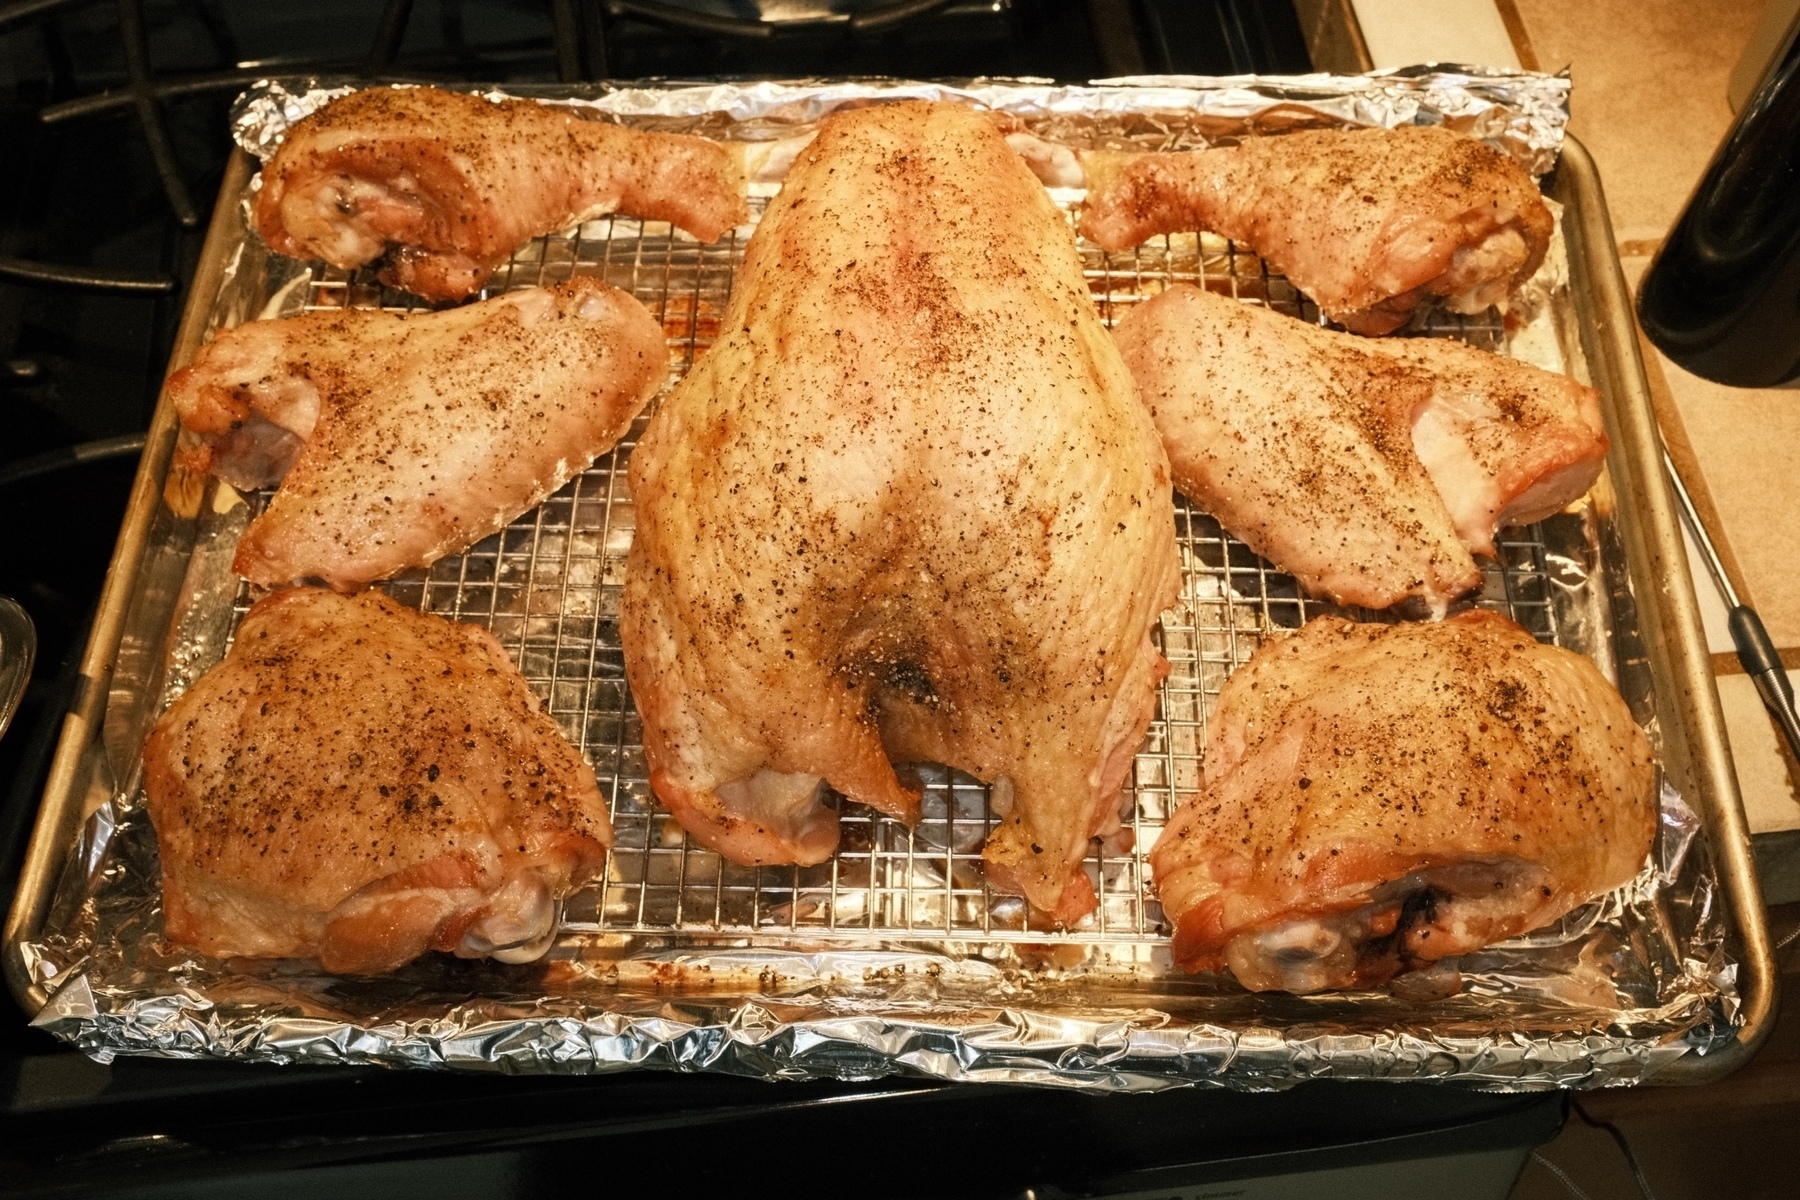 symmetrical golden brown turkey parts